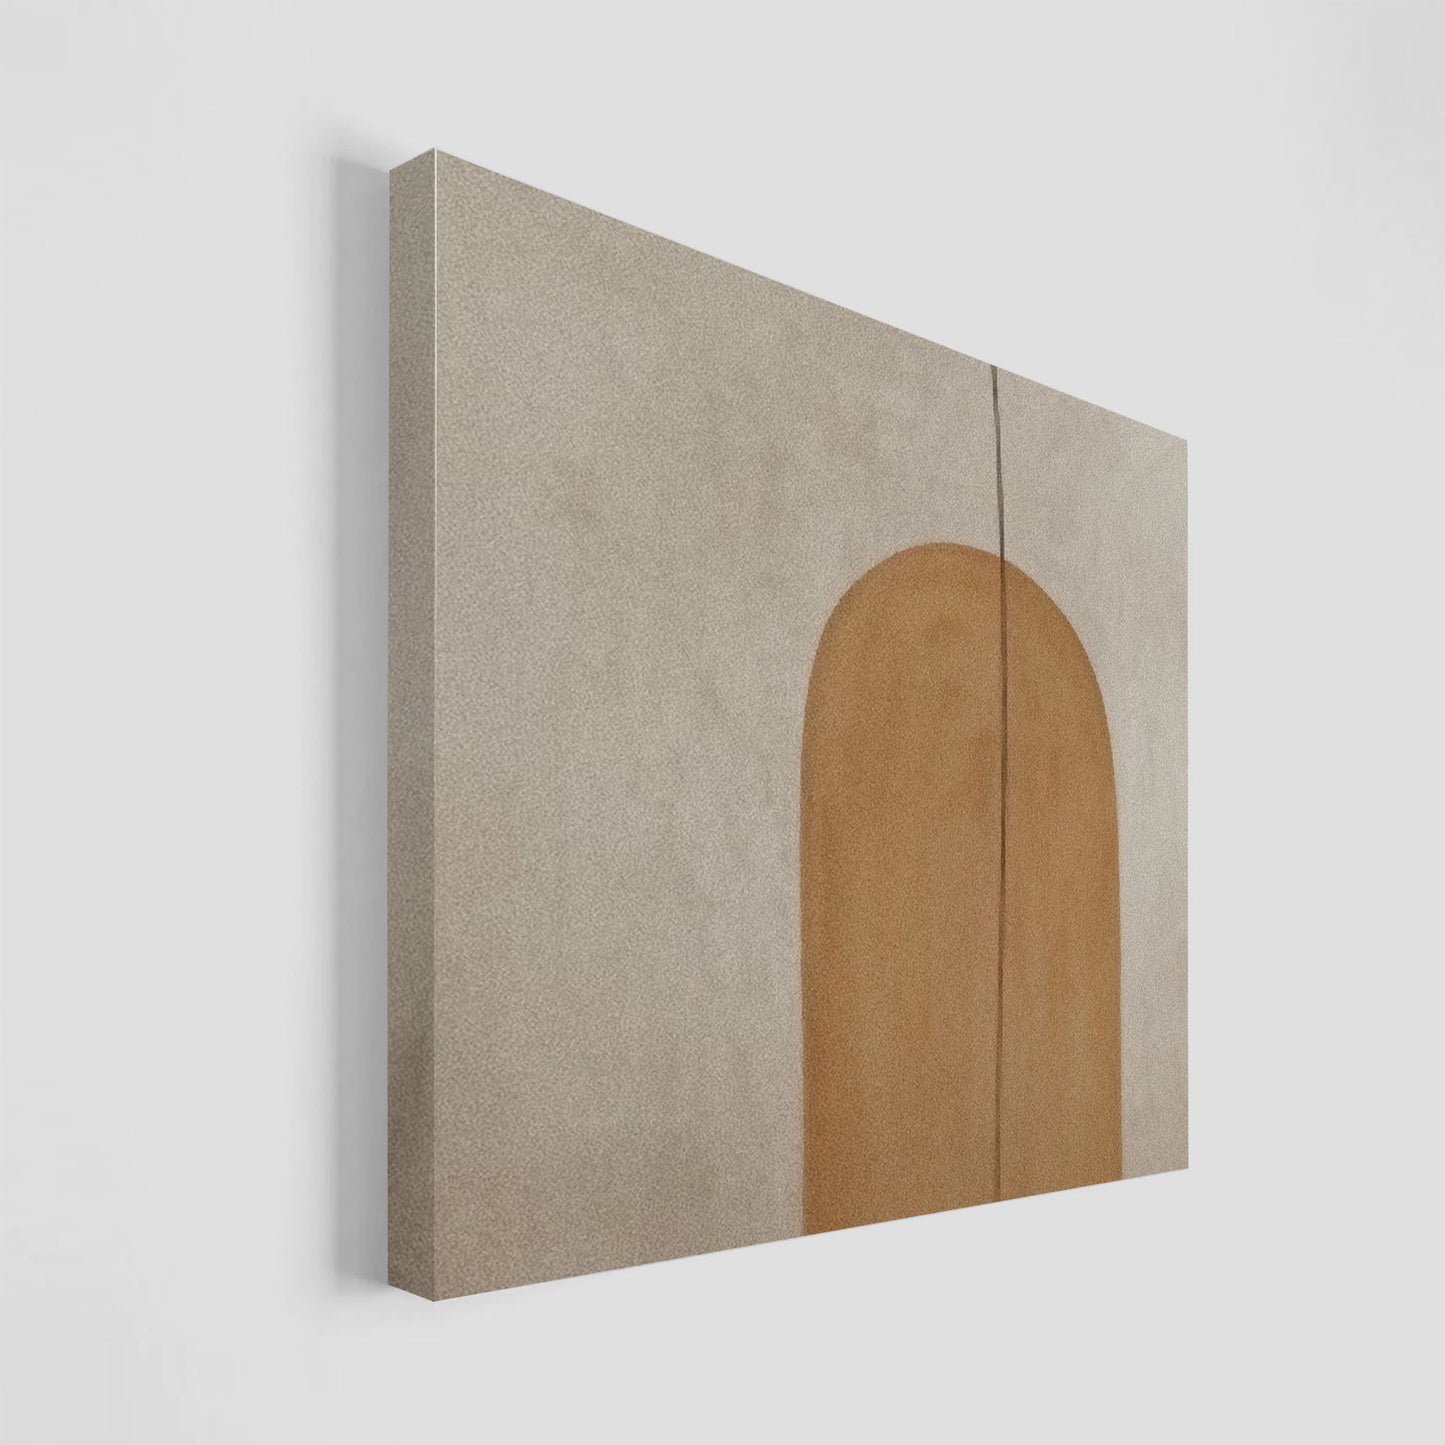 Obra de arte abstracto con una forma arqueada en color marrón sobre un fondo beige claro.